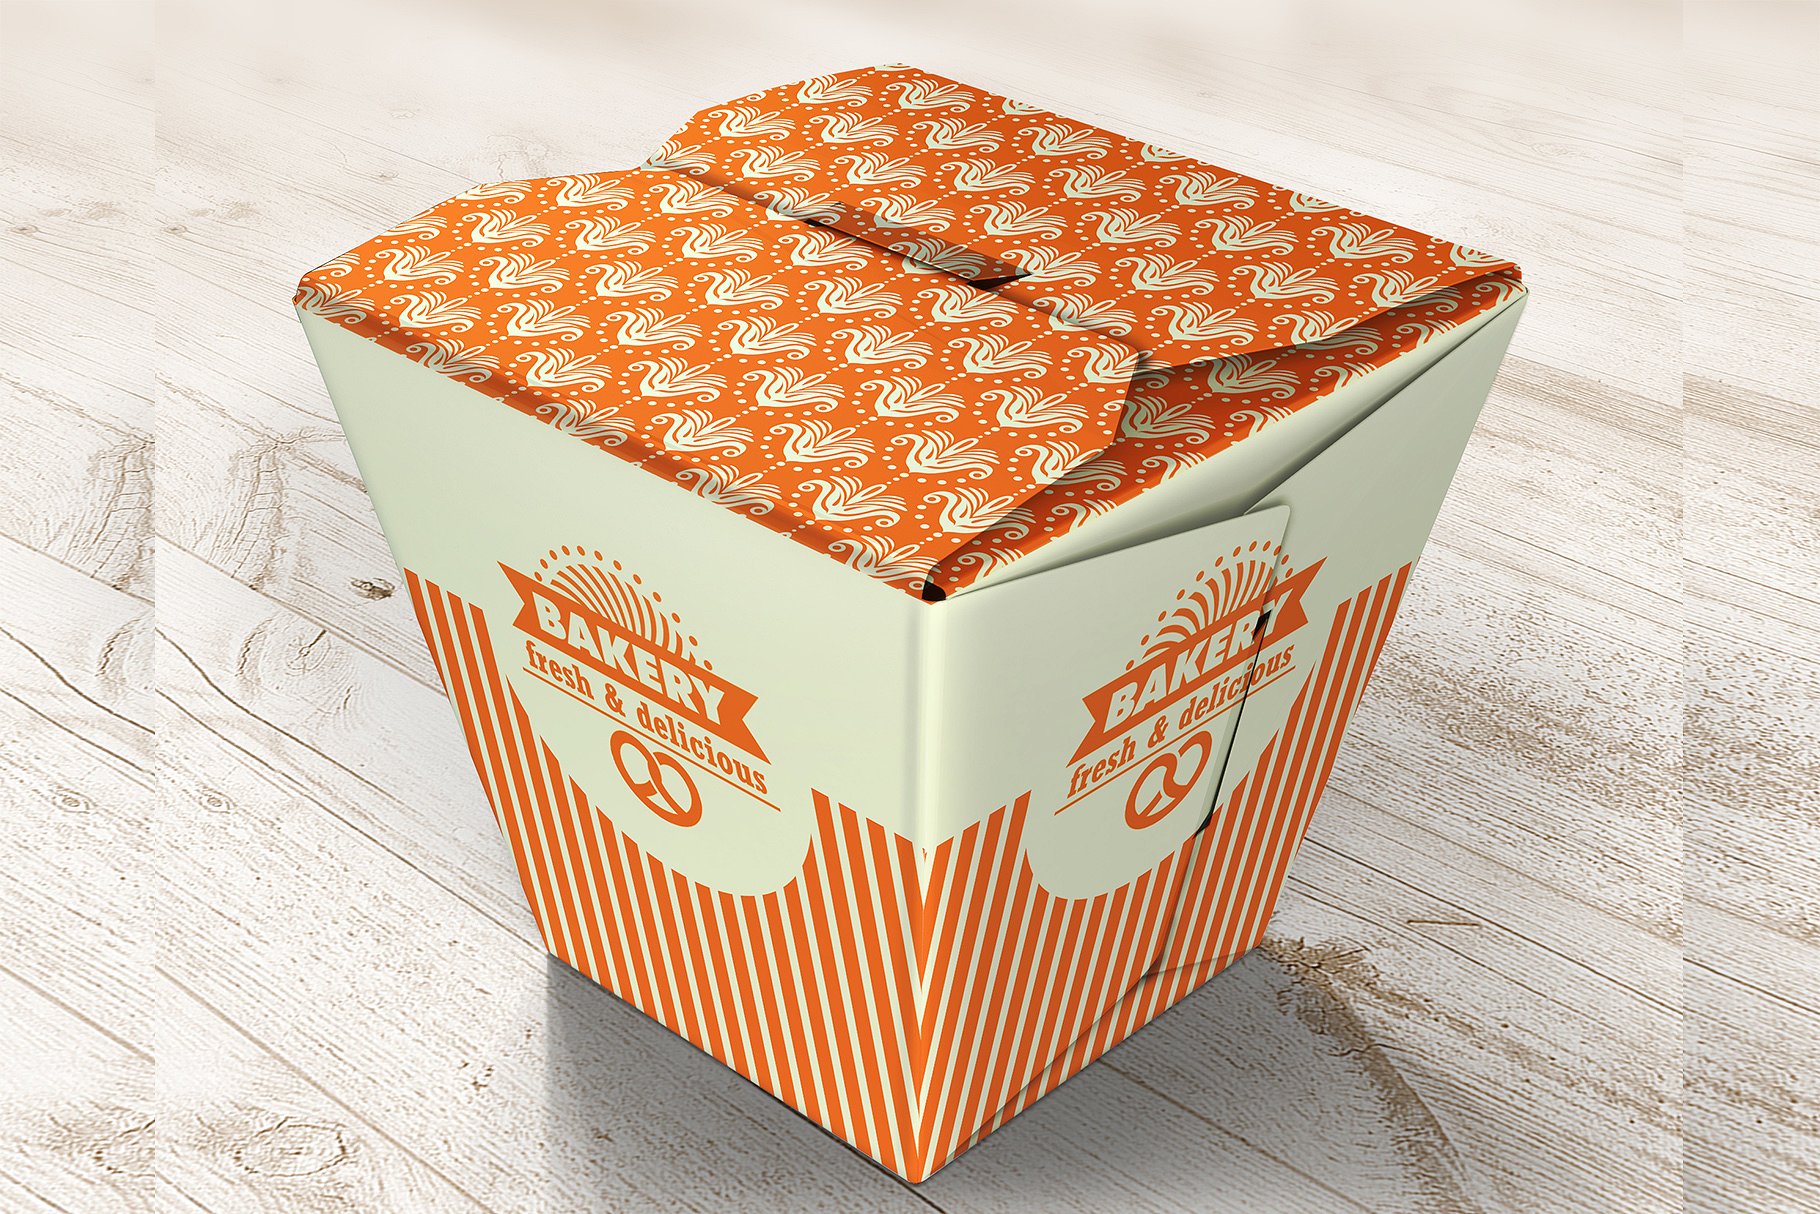 快餐盒子设计样机 Food Box mockups #92